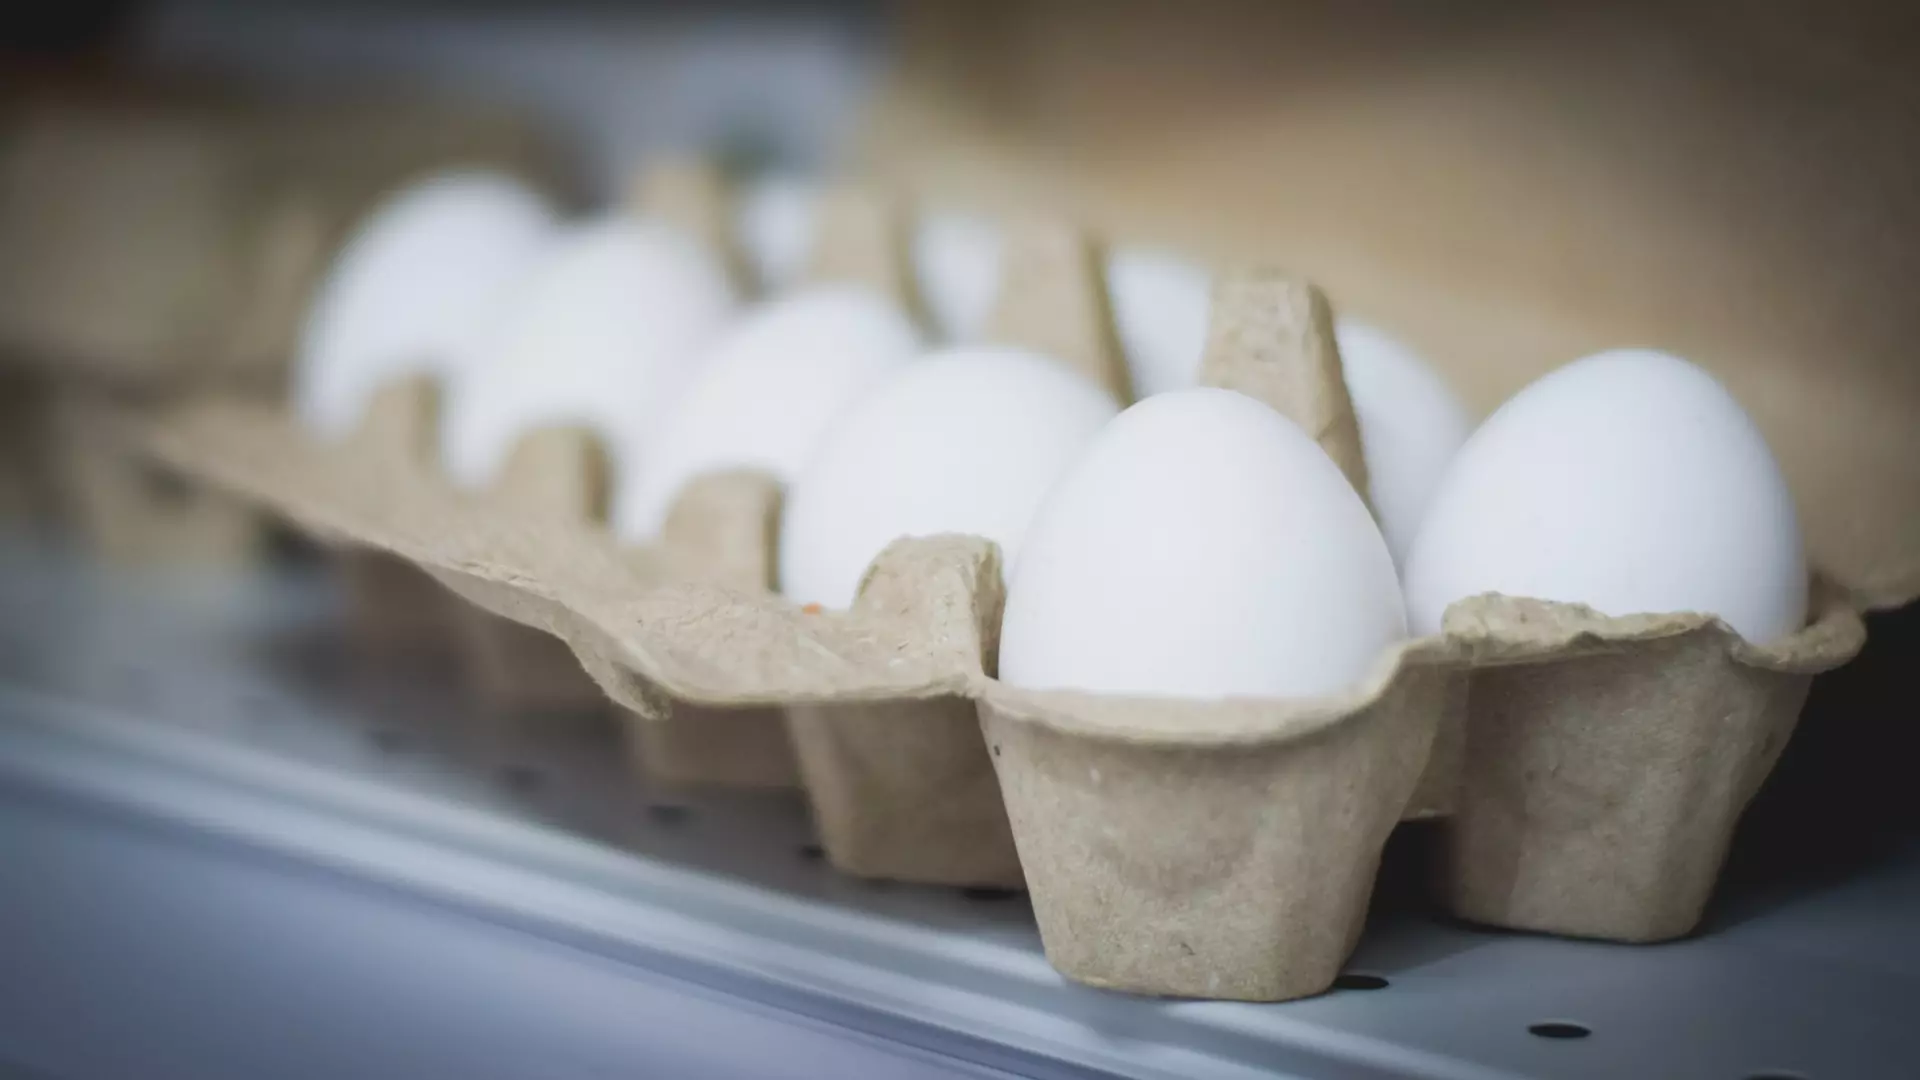 Цены на яйца в магазинах «ДВ Невада» проверит ФАС в Хабаровске